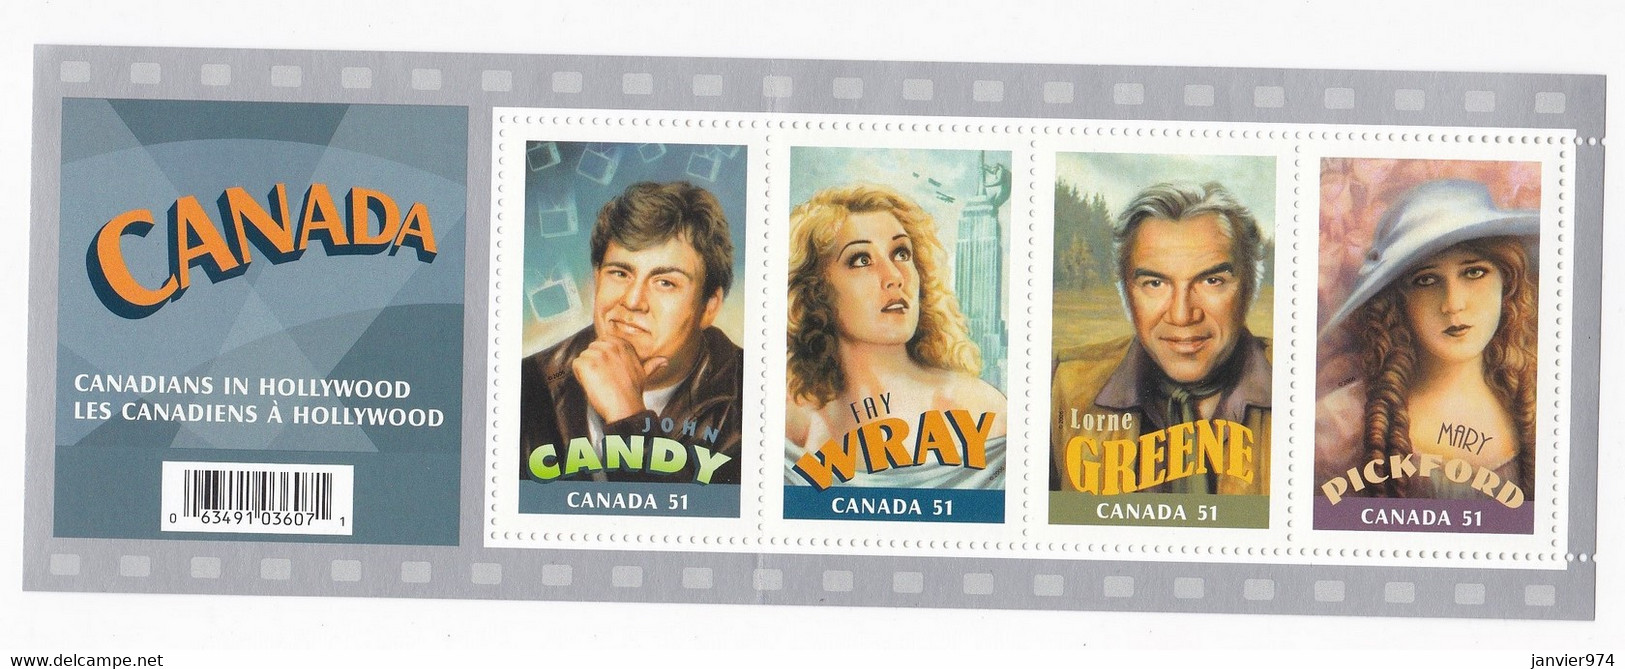 Canada ,  plusieurs Blocs , soit au total 86 timbres neufs , Voir 20 scan recto verso.